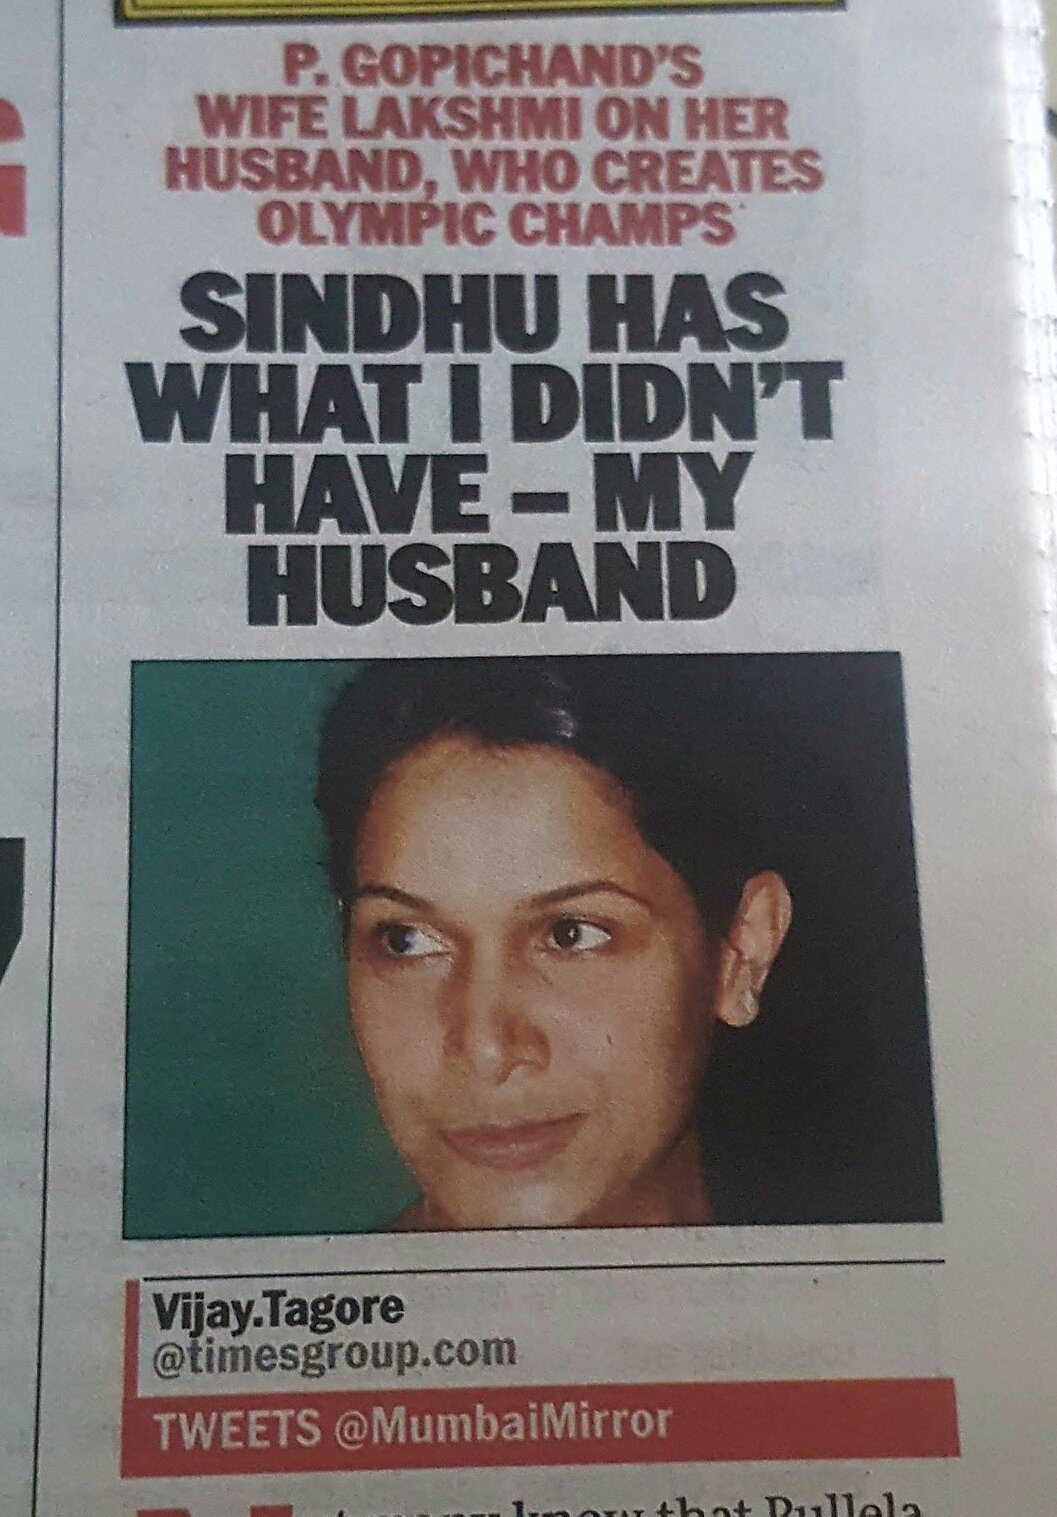 "P.V. Sindhu has what I didn't have--My Husband" Cqbu8ppUkAERY_t